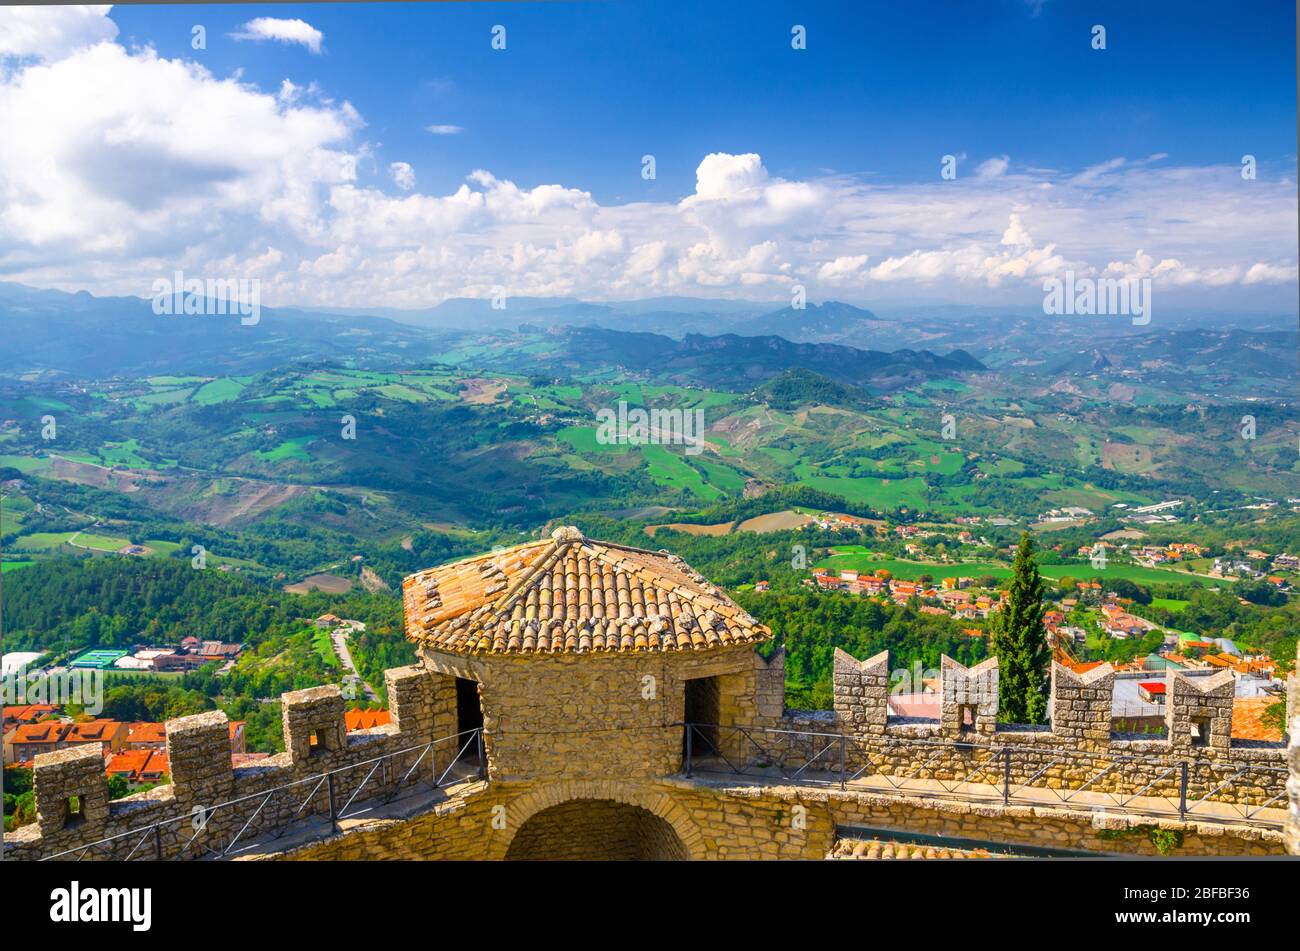 Luftbild oben panoramic view Landschaft mit Tal, grünen Hügeln, Feldern, Dörfern der Republik San Marino Vorstadt, blauen Himmel weißen Wolken zurück gro Stockfoto